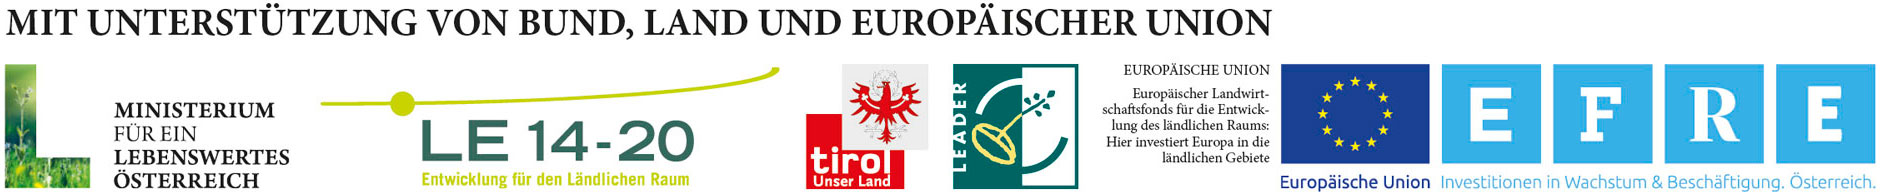 Logoleiste EFRE Bund